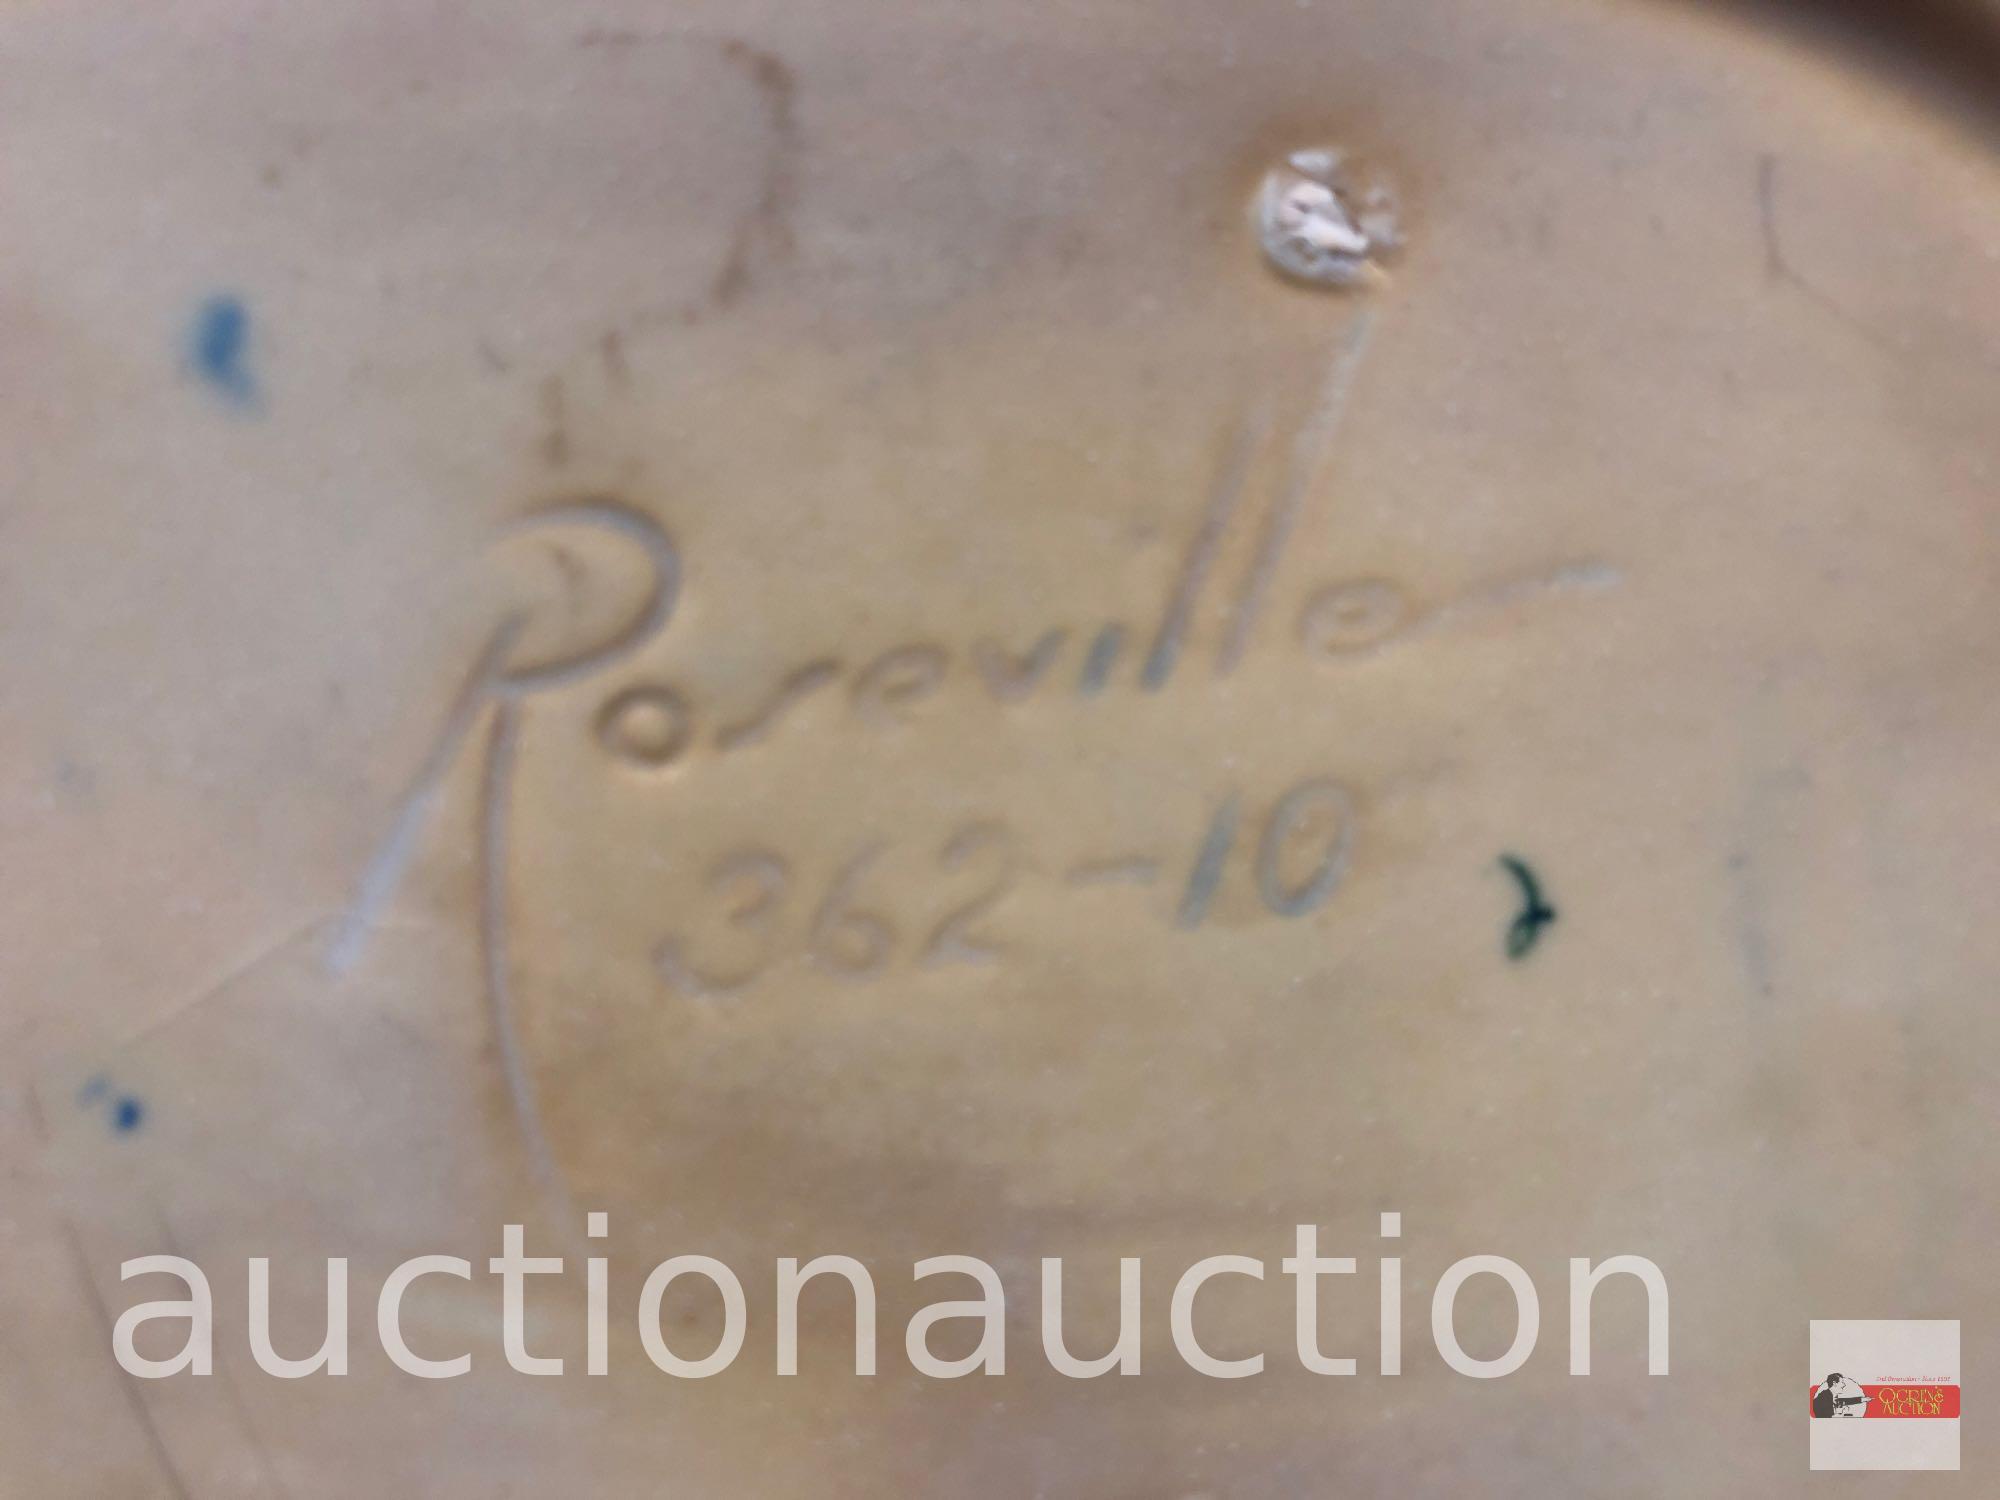 Roseville Pottery - 1939 Iris console bowl, #362-10, blue, 12.5"wx6.75"dx3.75"h